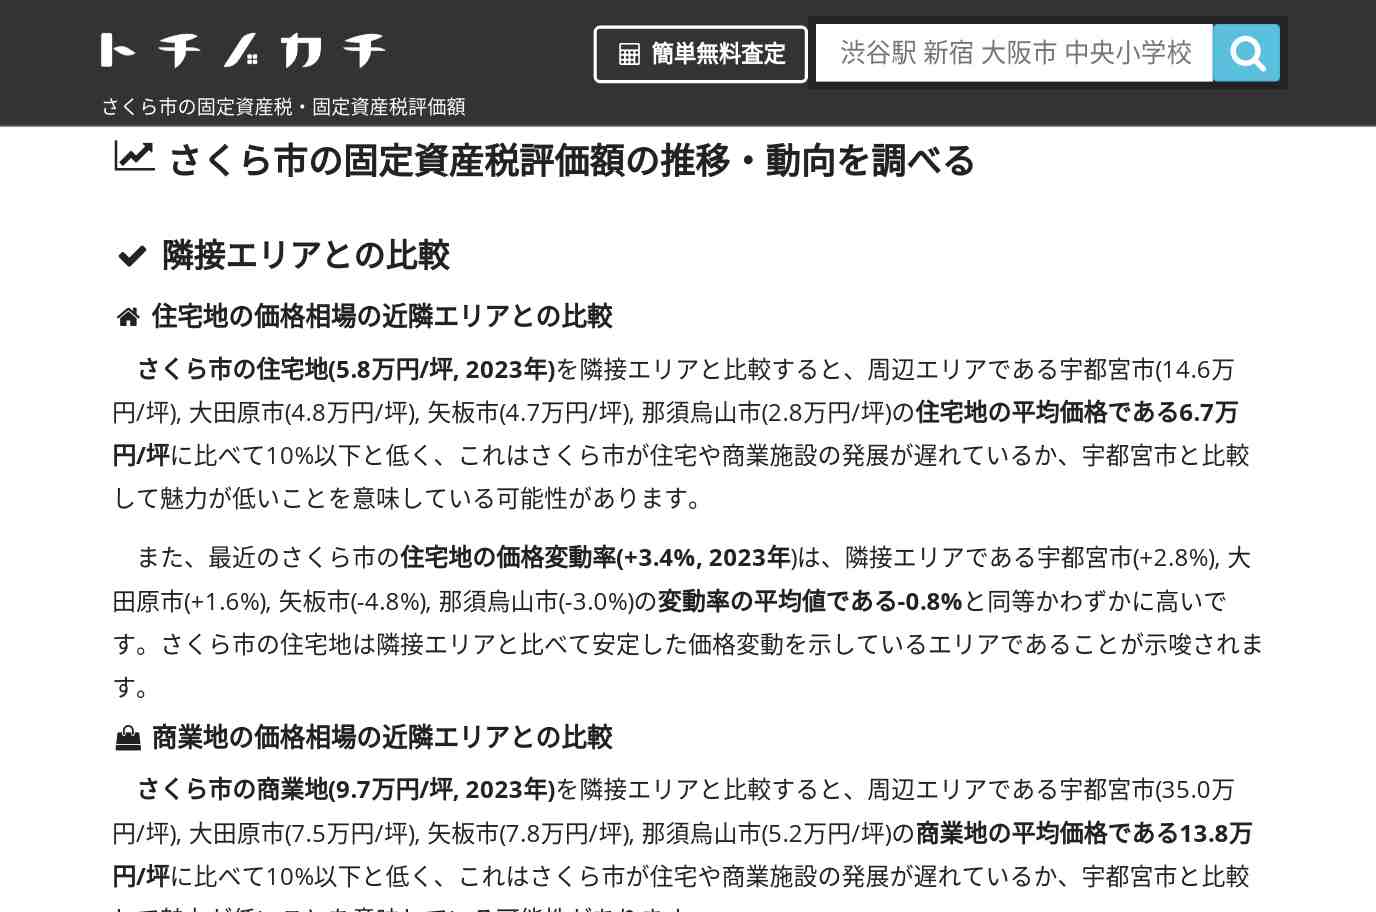 喜連川小学校(栃木県 さくら市)周辺の固定資産税・固定資産税評価額 | トチノカチ